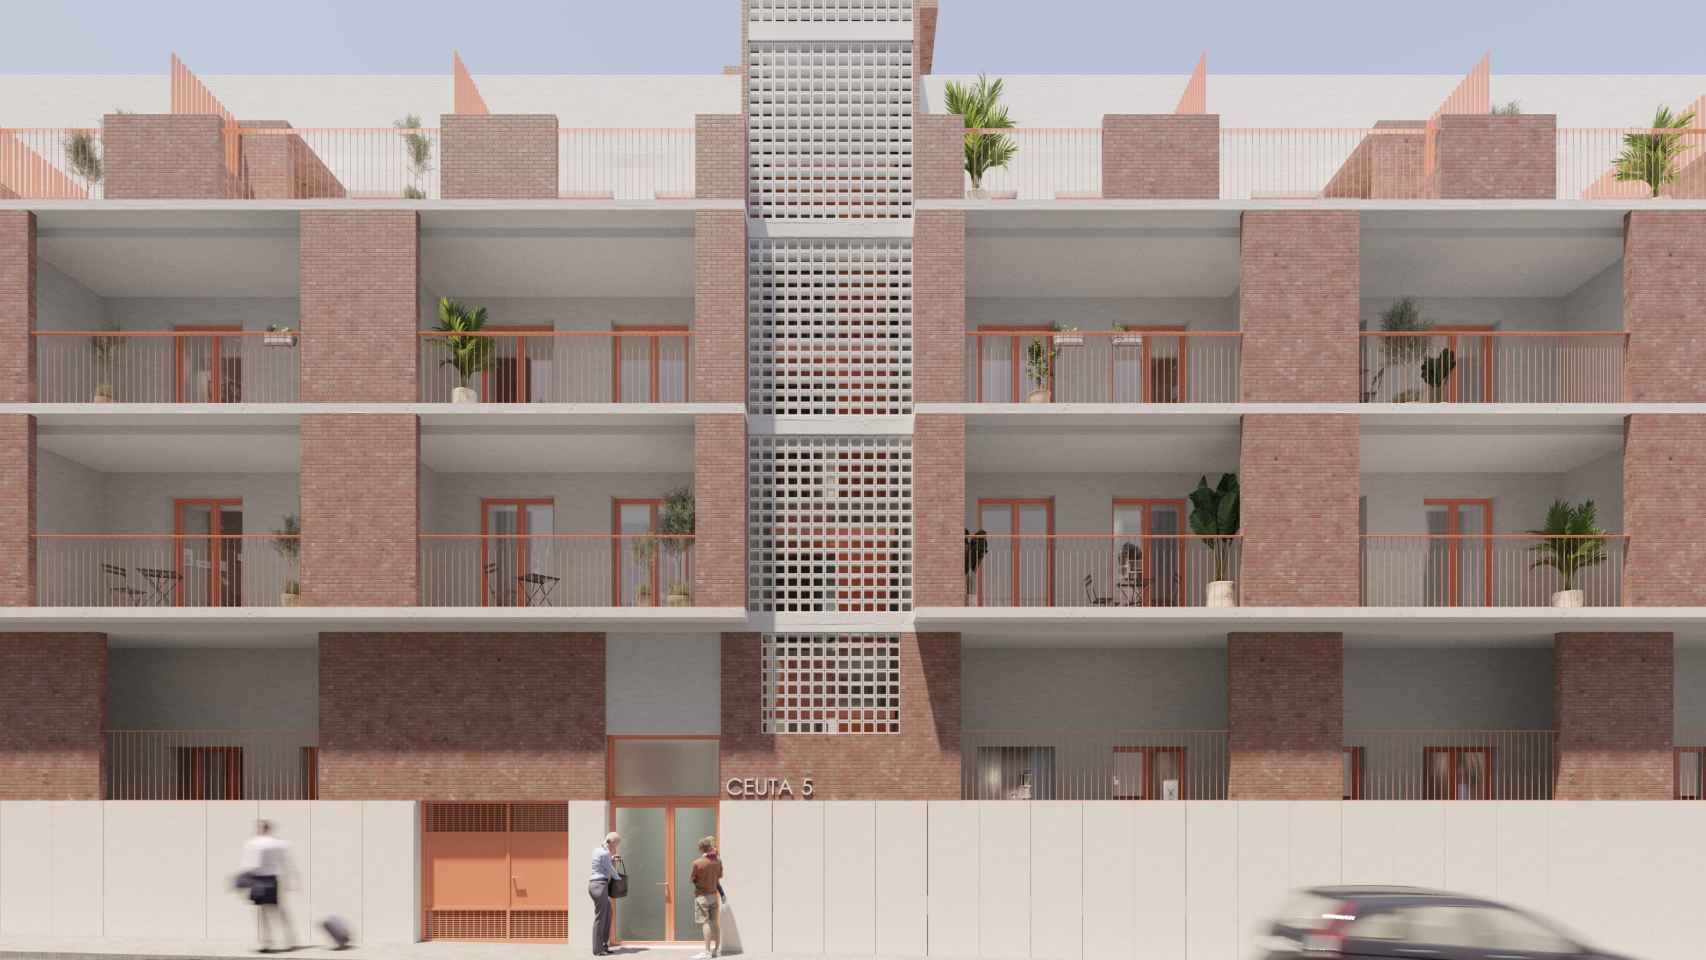 La fachada del nuevo bloque constará de 4 plantas.